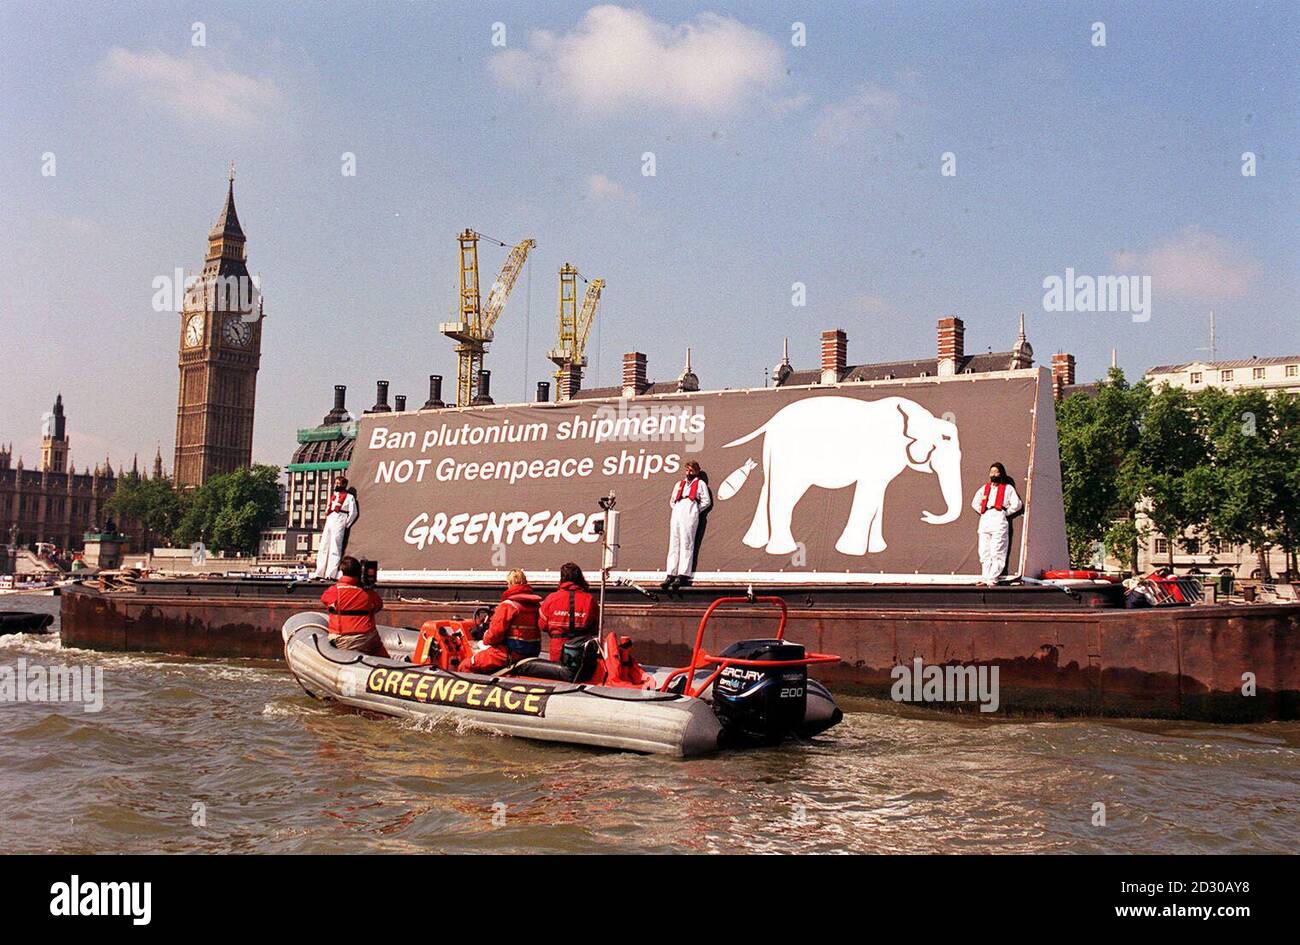 Greenpeace a envoyé un message à Tony Blair d'une barge sur la Tamise, à l'extérieur des chambres du Parlement , condamnant les expéditions récemment repartis de plutonium utilisable d'armes de Grande-Bretagne, la bannière de 40 pieds de long. * la bannière a montré une image d'un éléphant blanc excrétant une bombe nucléaire et avec le mot s 'Tony Blair , les expéditions de plutonium DE Ban PAS les navires de Greenpeace. Banque D'Images